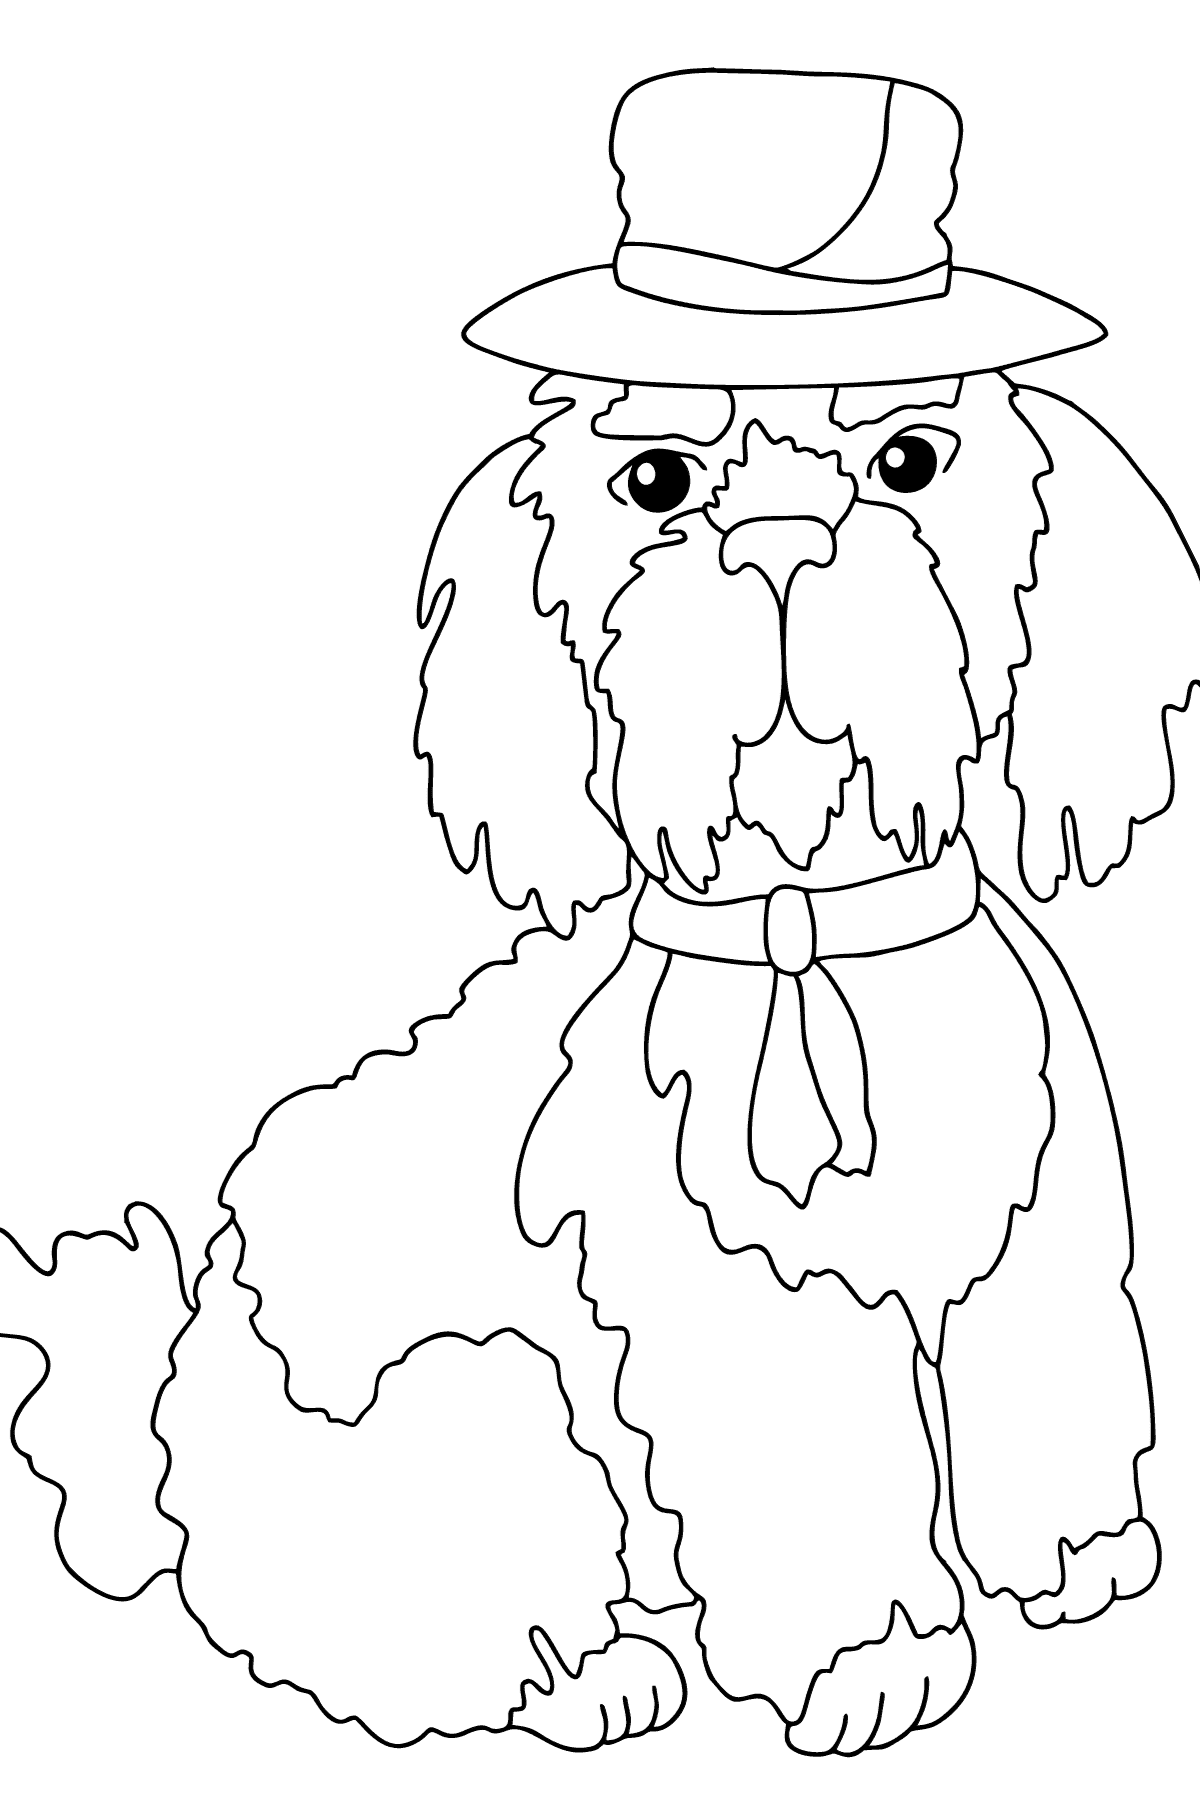 Boyama sayfası sevimli köpek (kolay) - Boyamalar çocuklar için